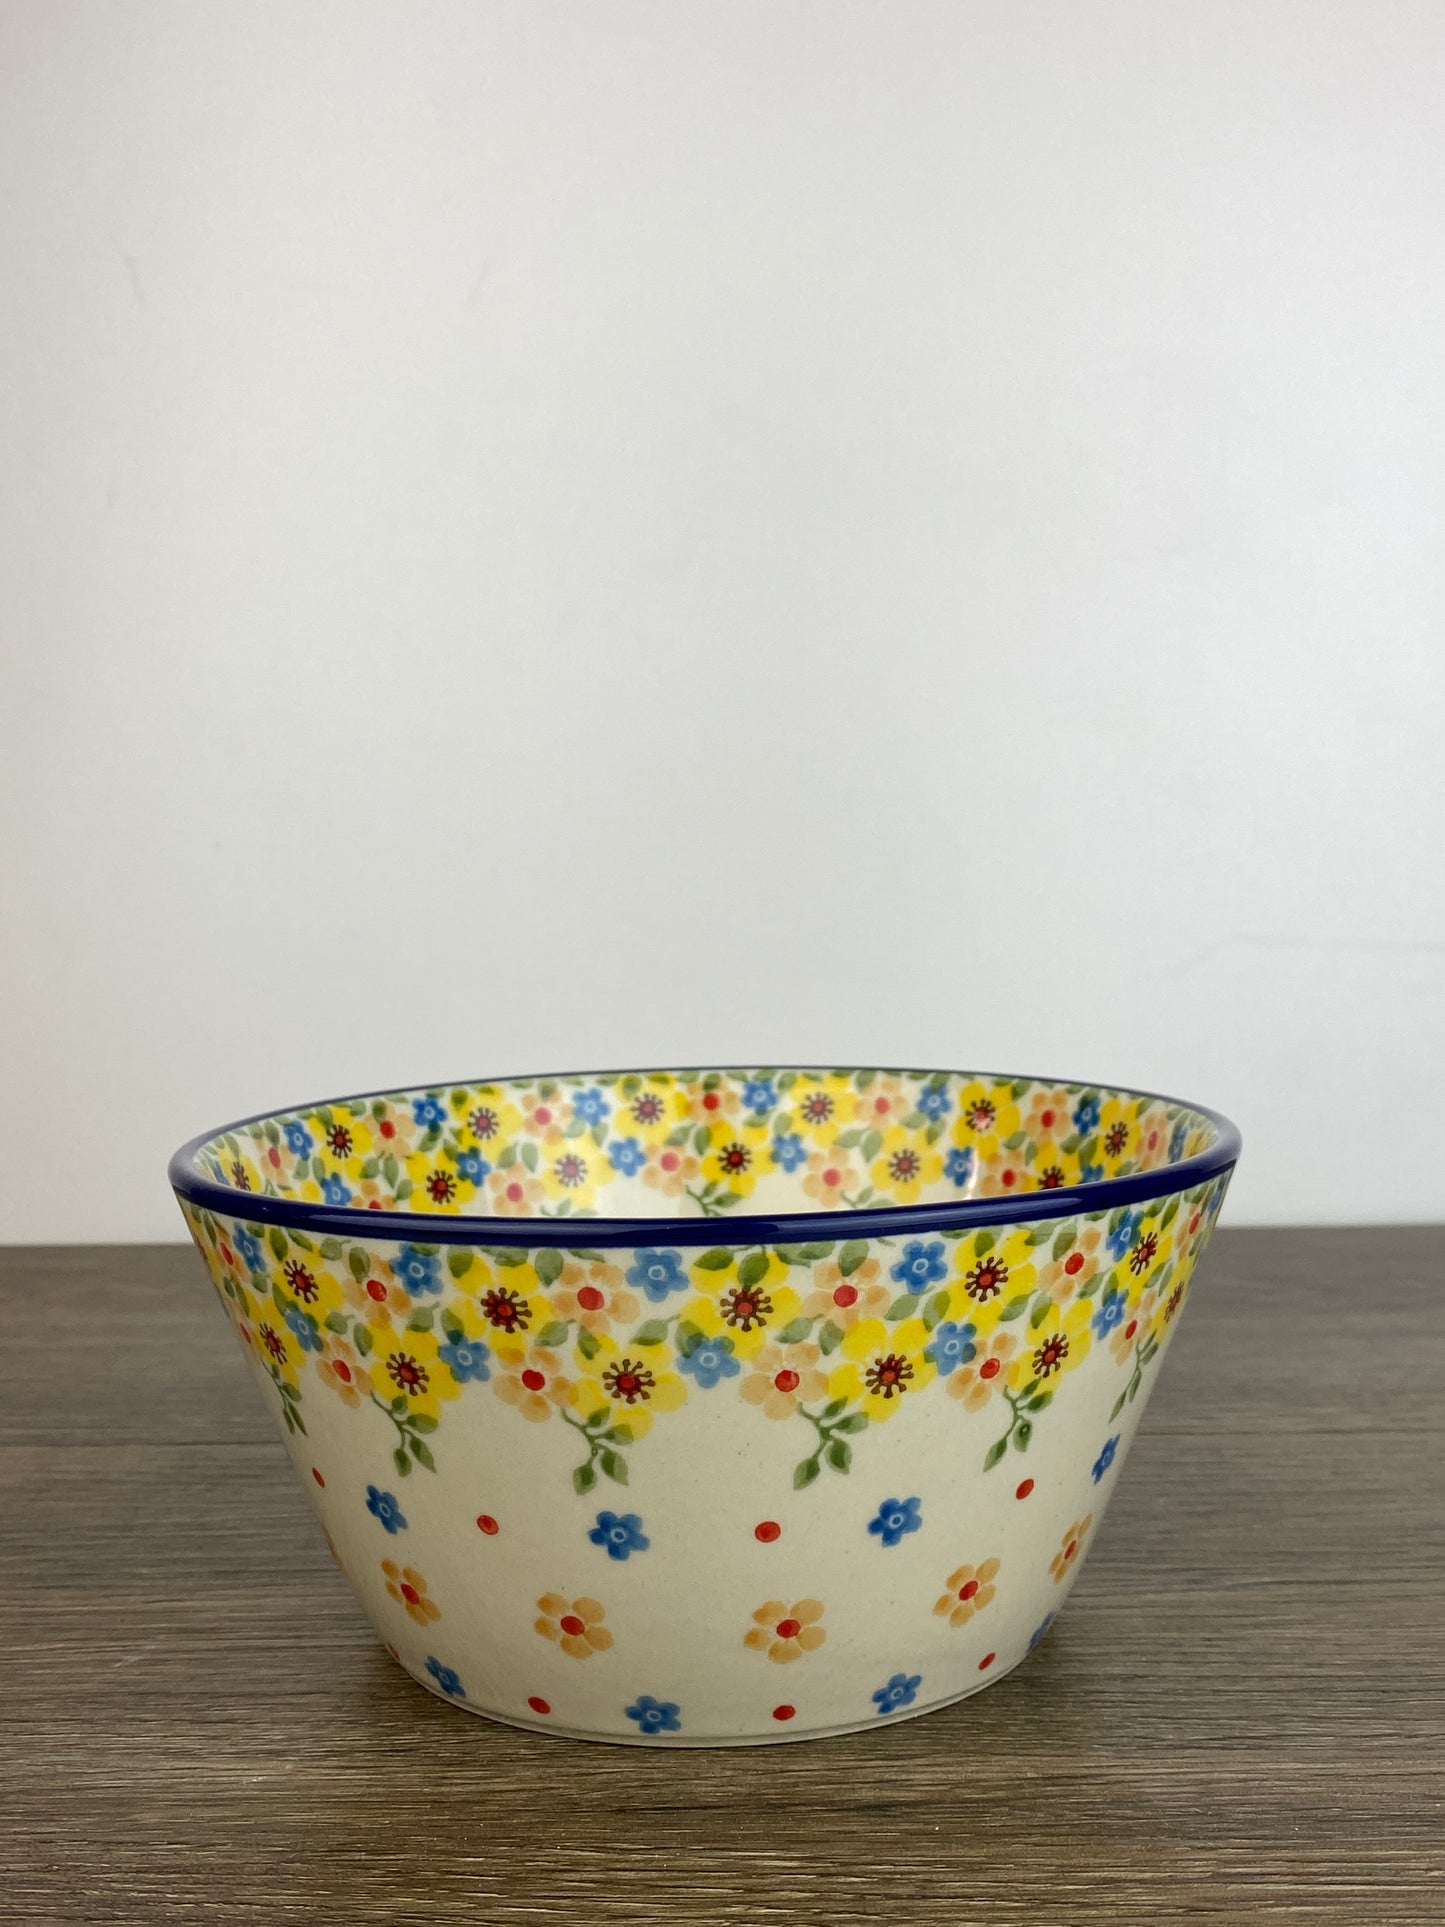 Medium Bowl - Shape E97 - Pattern 2225